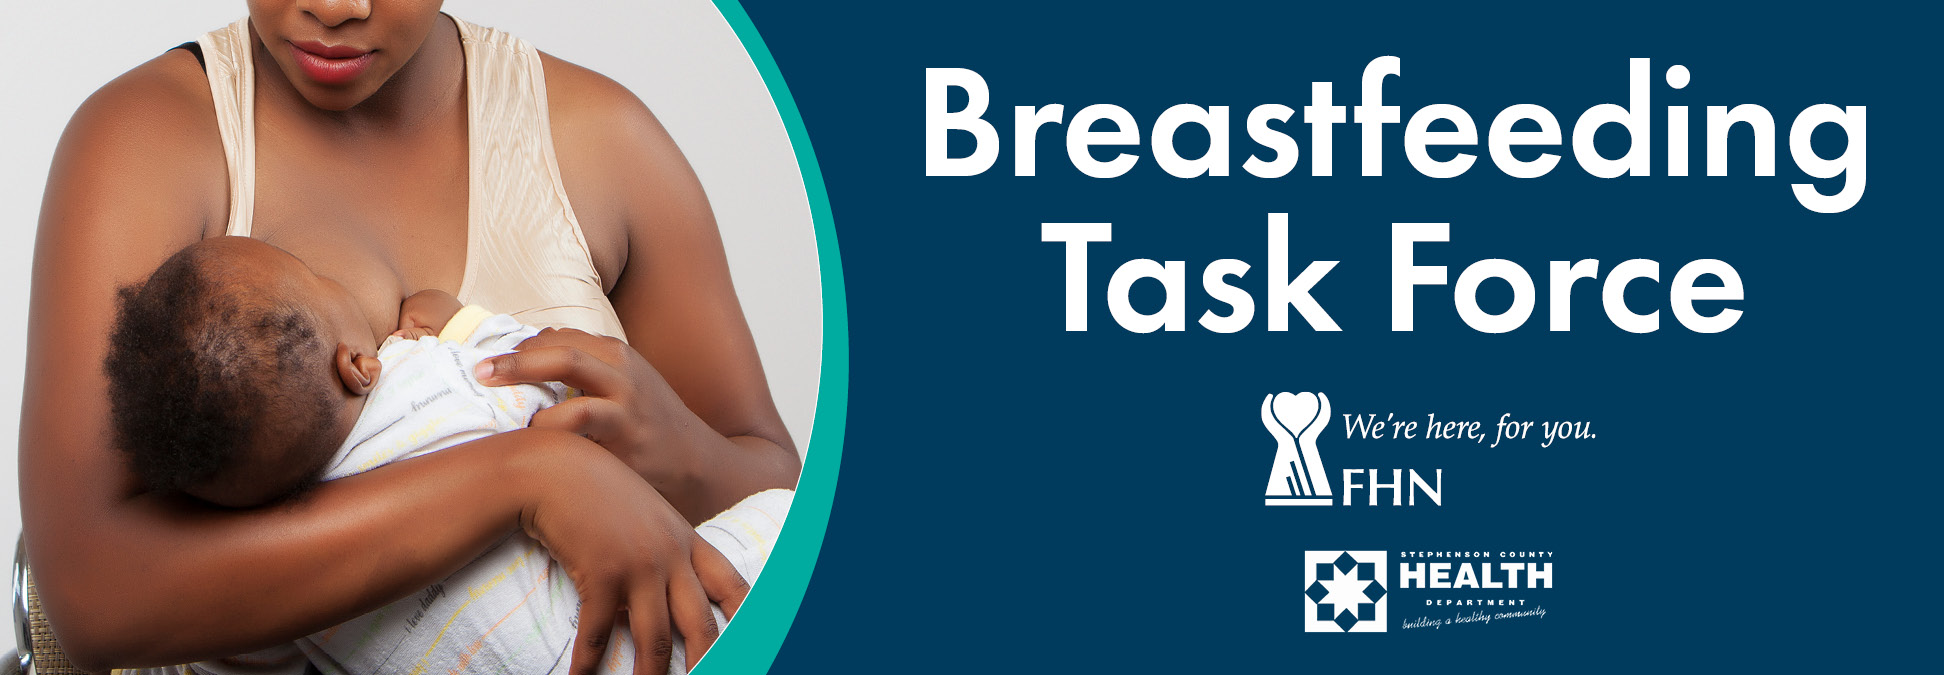 https://www.fhn.org/images/header/breastfeedingtaskforce.jpg